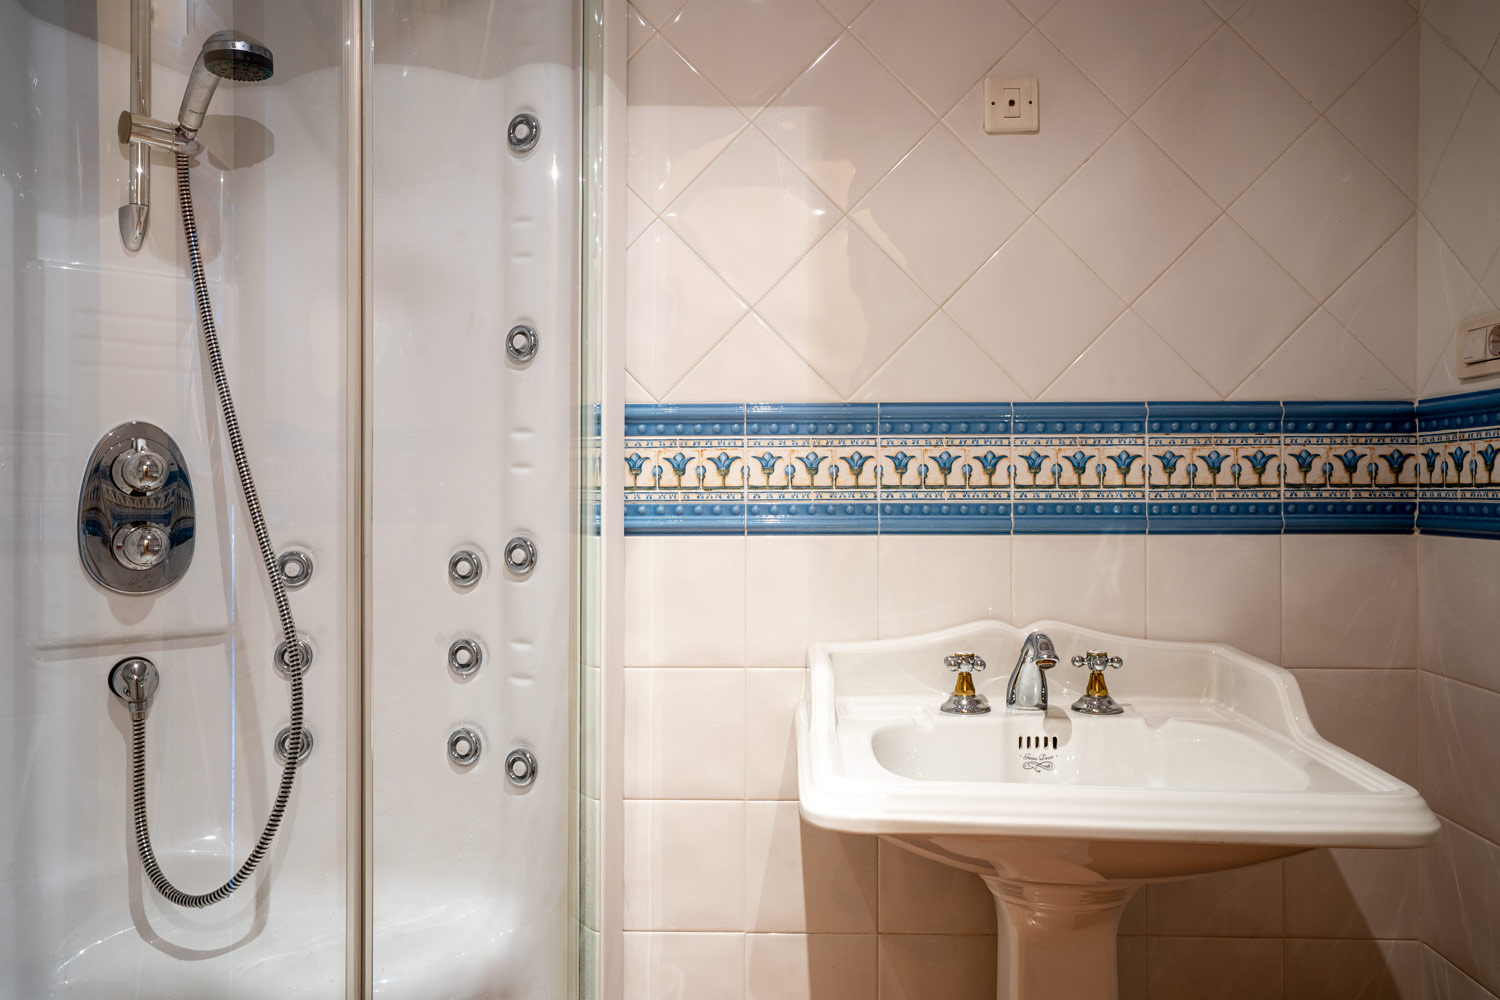 Detalle de lavabo con grifería de estilo clásico y ducha hidromasaje